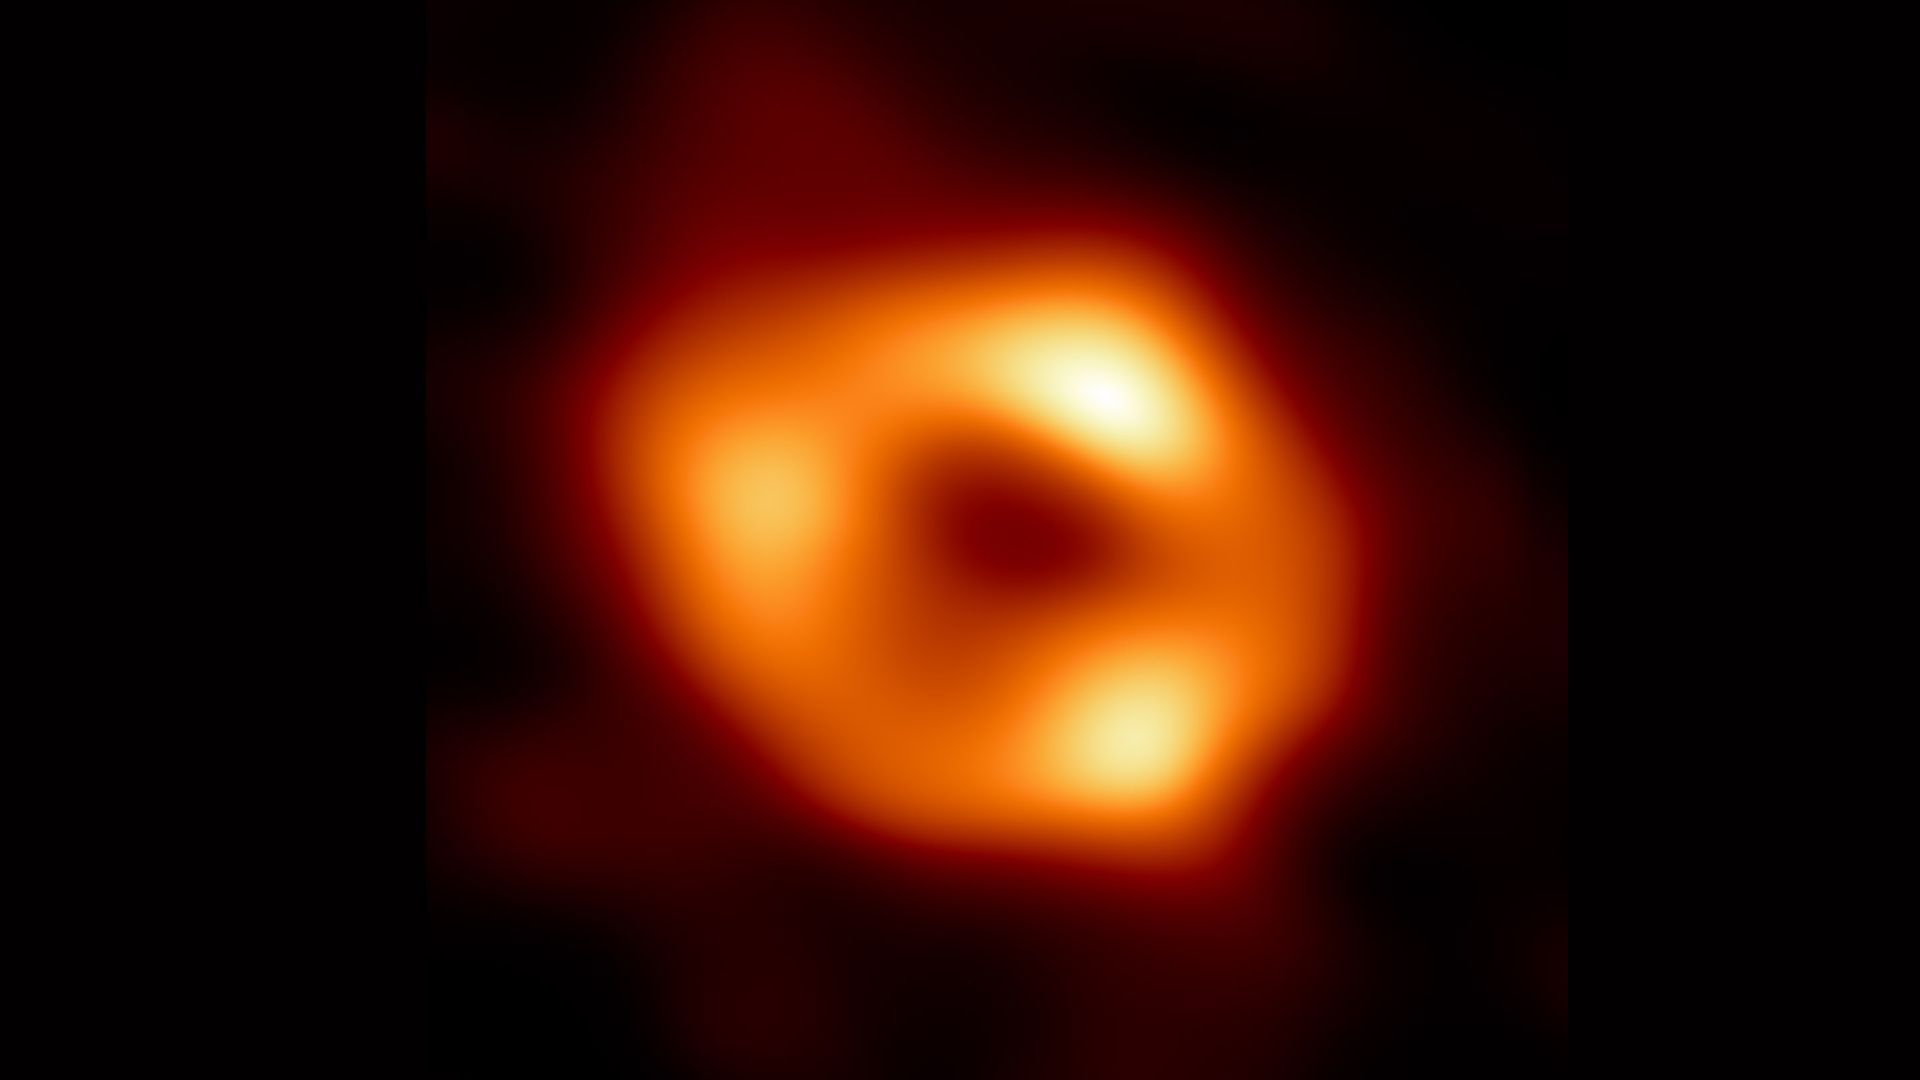 Сверхмассивная черная дыра в центре нашей галактики Млечный Путь впервые сфотографирована